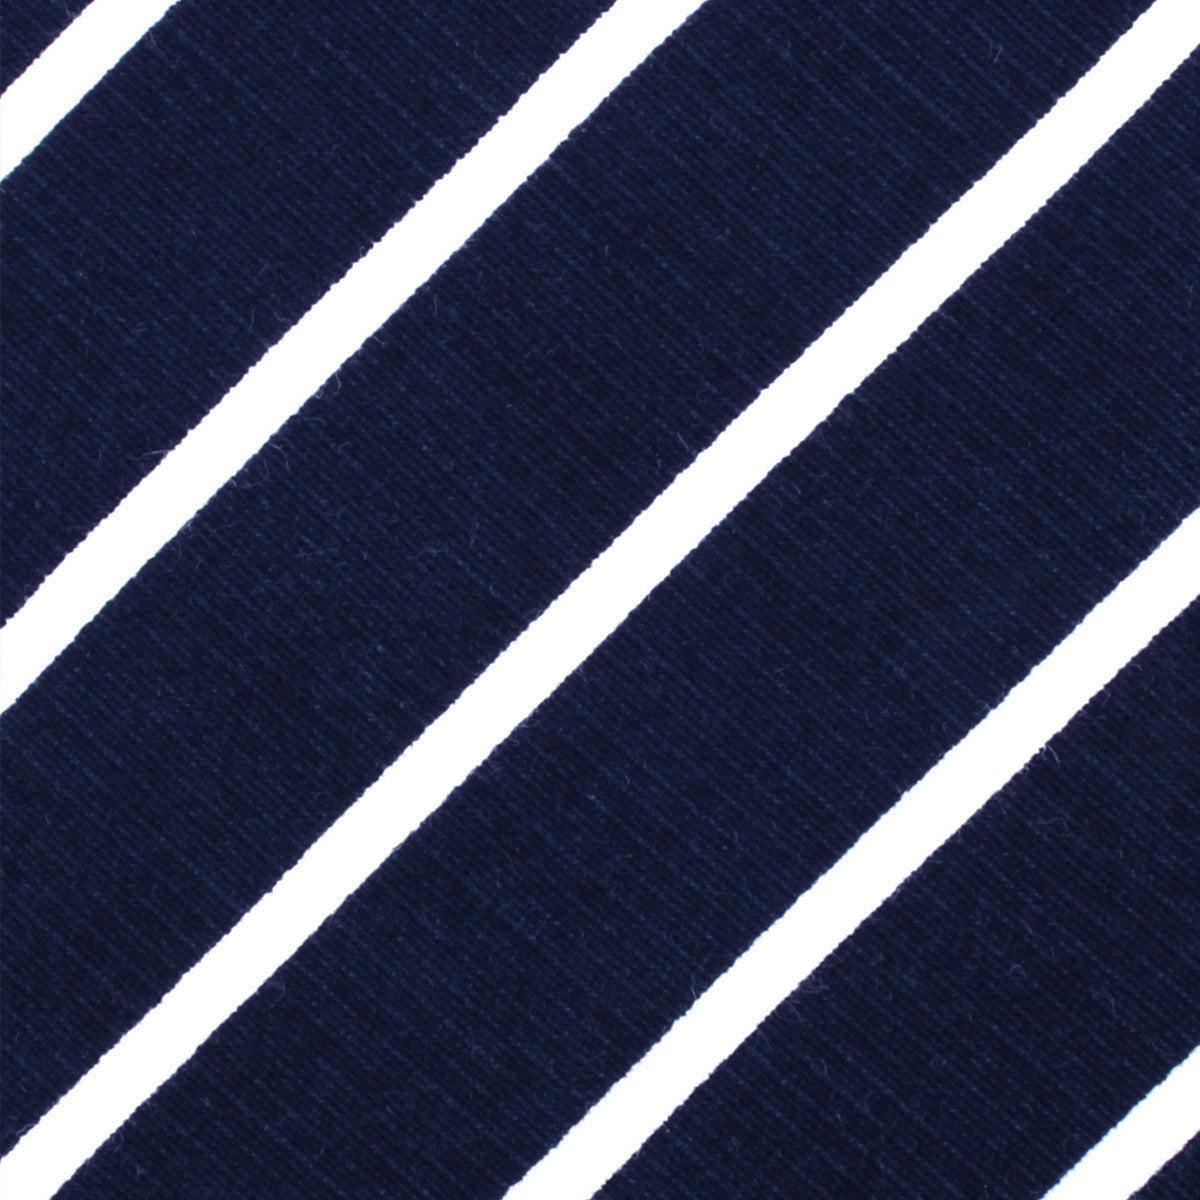 Oxford Blue Pencil Striped Linen Pocket Square Fabric